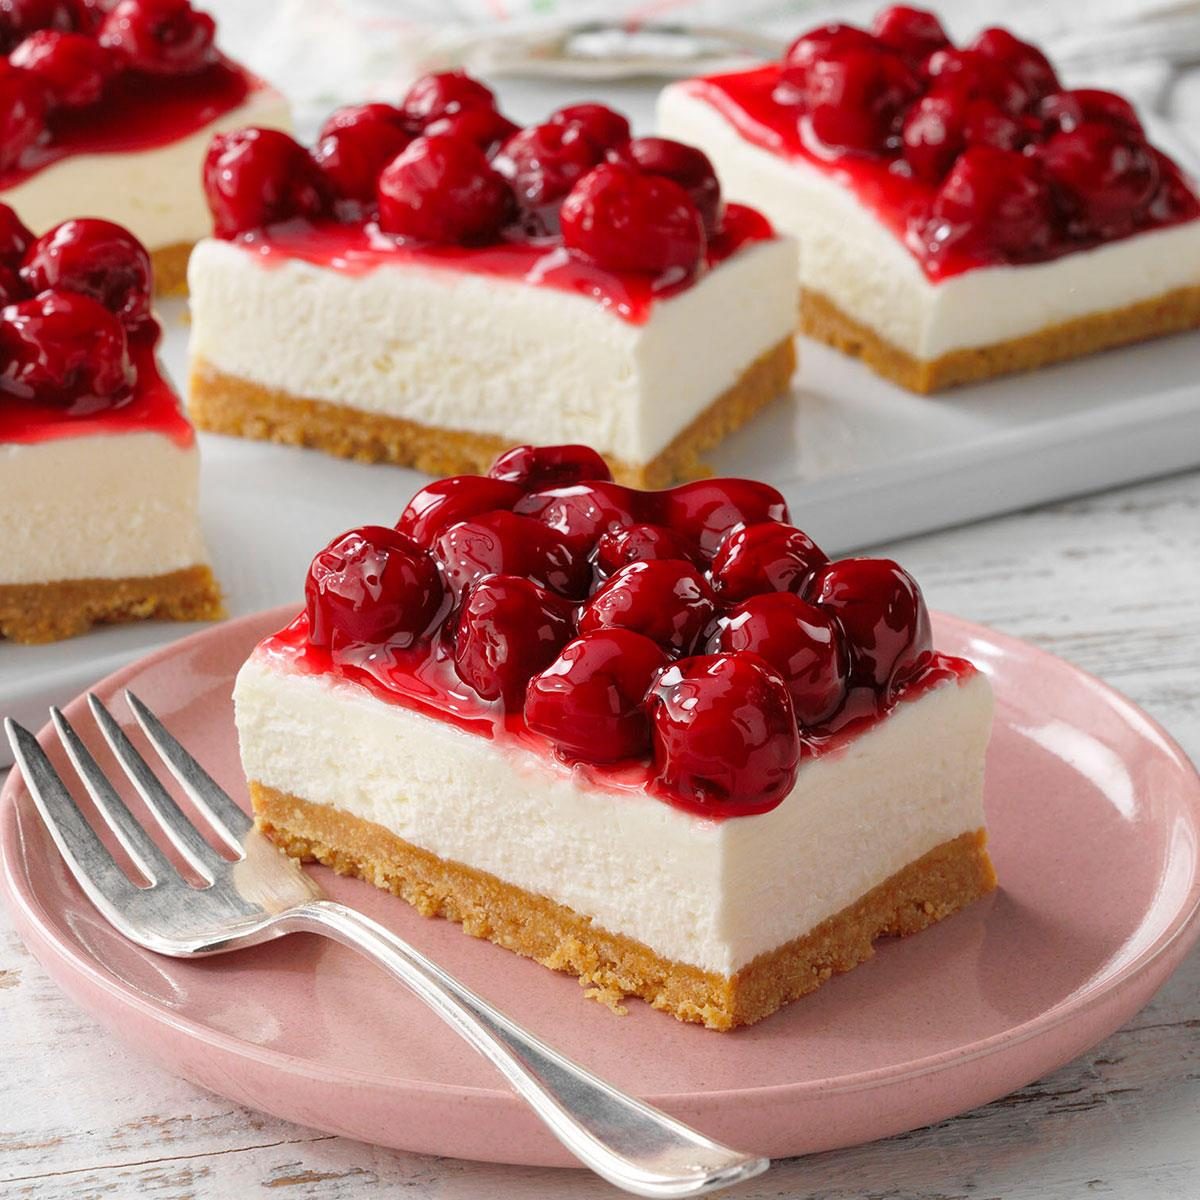 https://www.tasteofhome.com/wp-content/uploads/2018/01/Cherry-Delight-Dessert_EXPS_TOHcom23_27515_P2_MD_03_22_4b.jpg